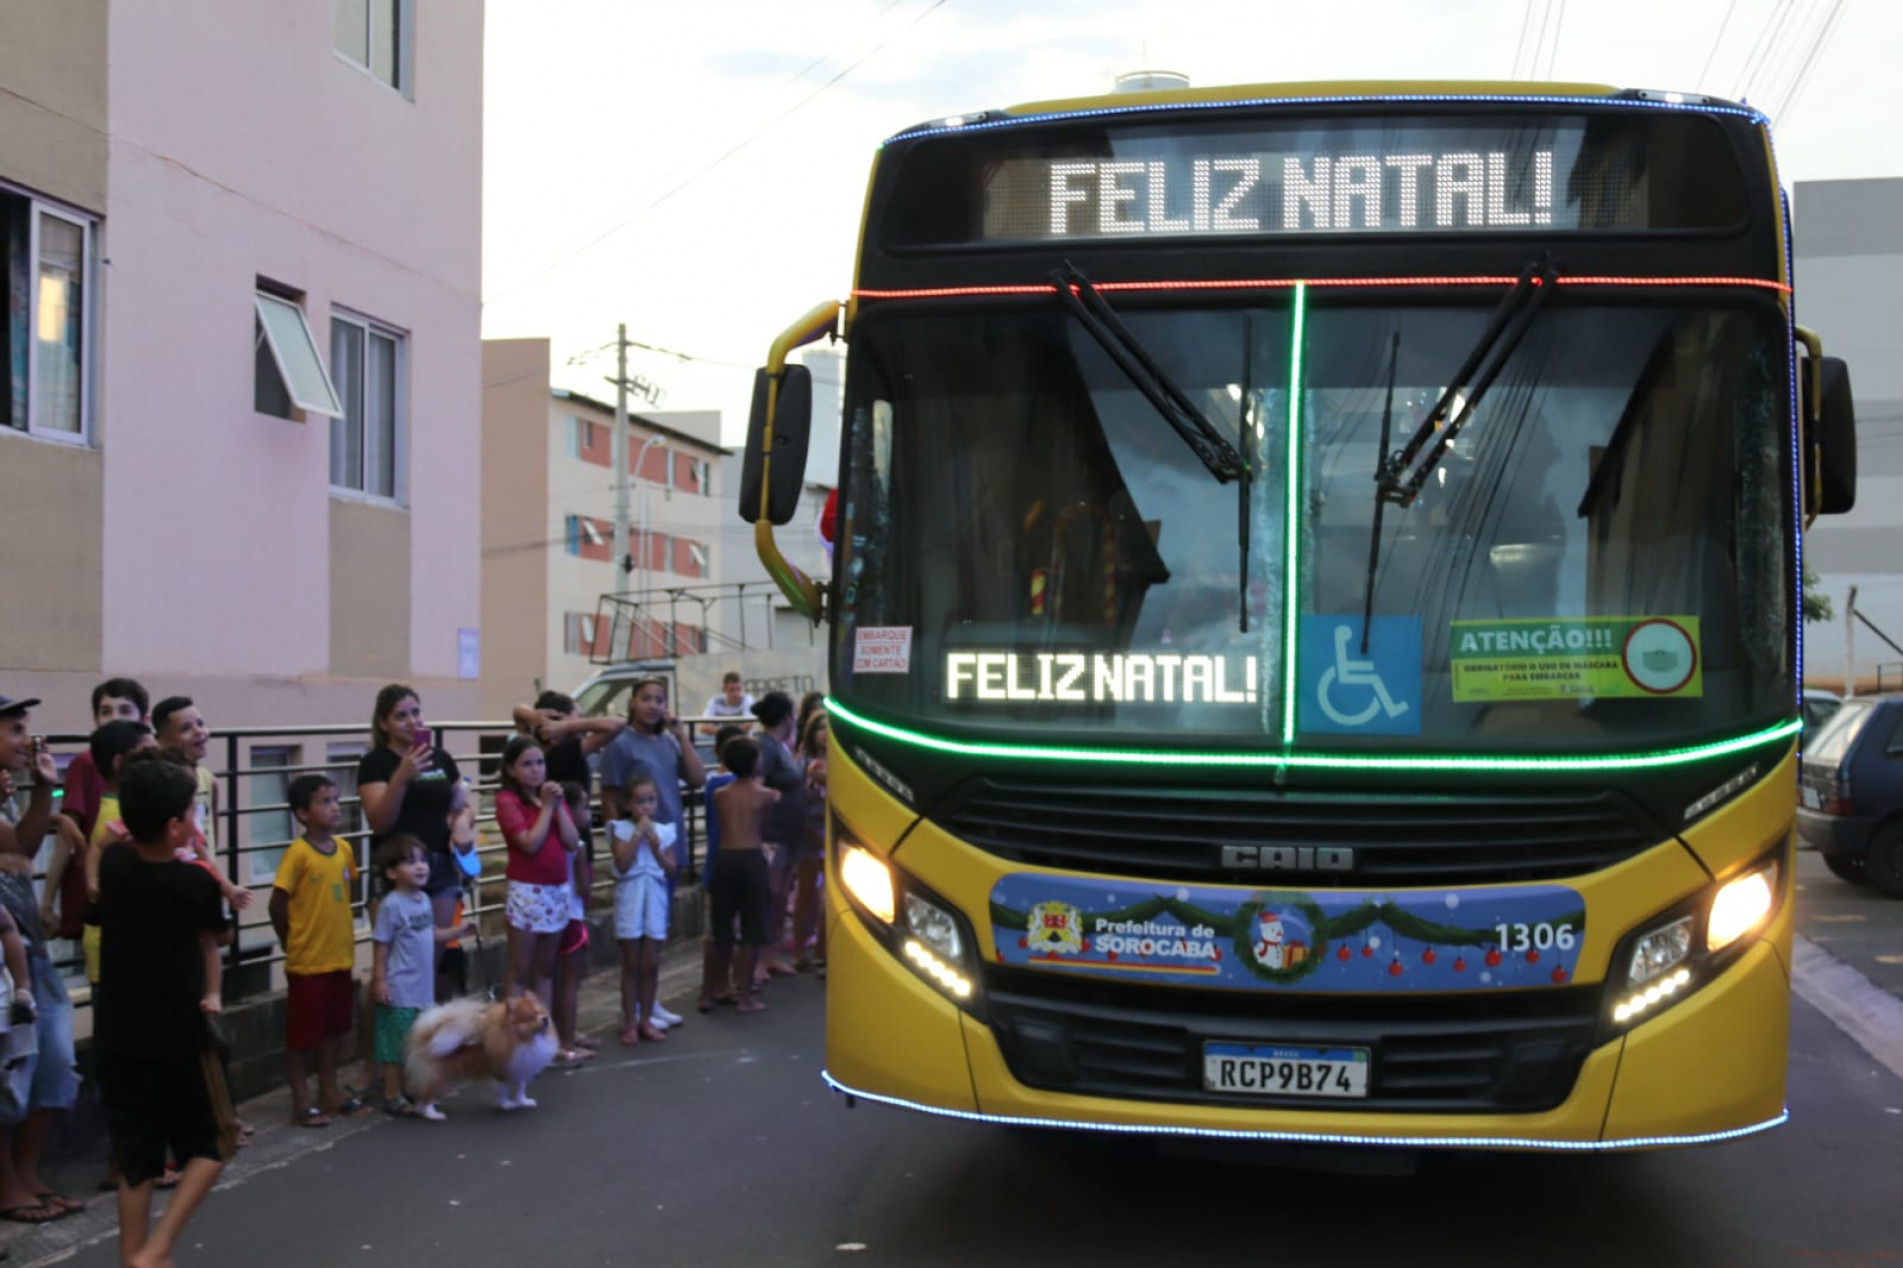 Ônibus customizado leva mensagem natalina a diversos locais
